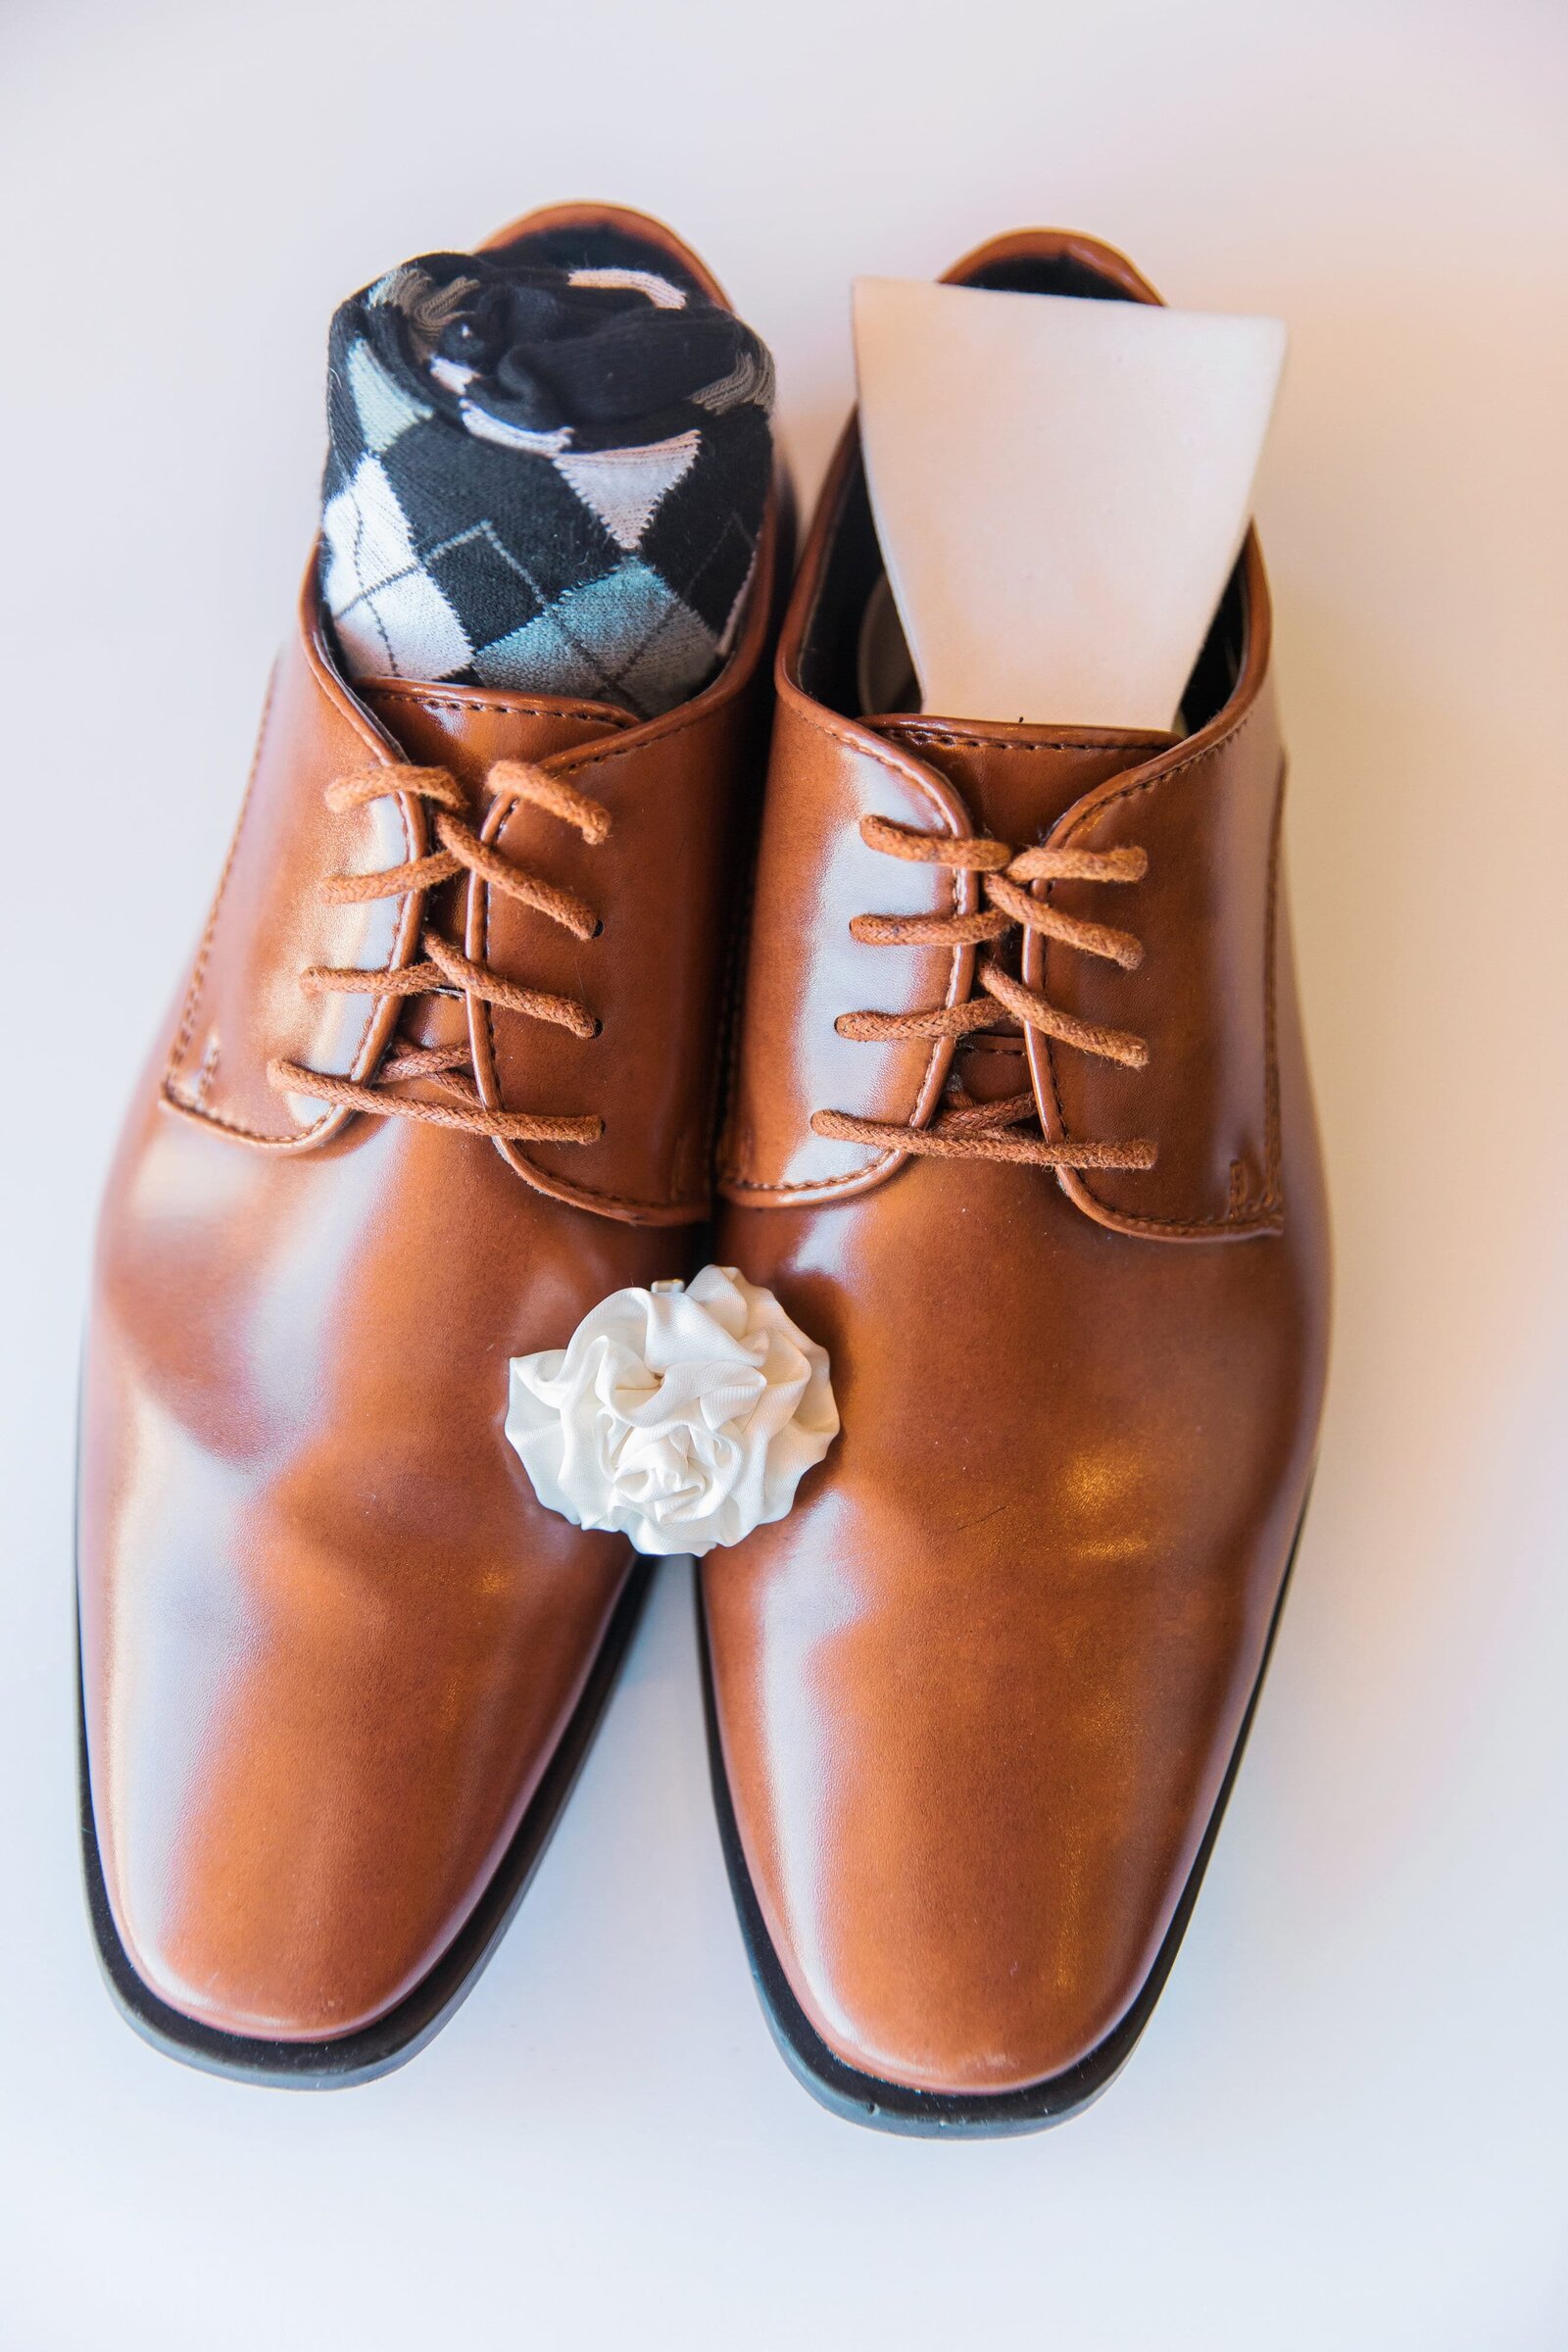 groom-wedding-shoes